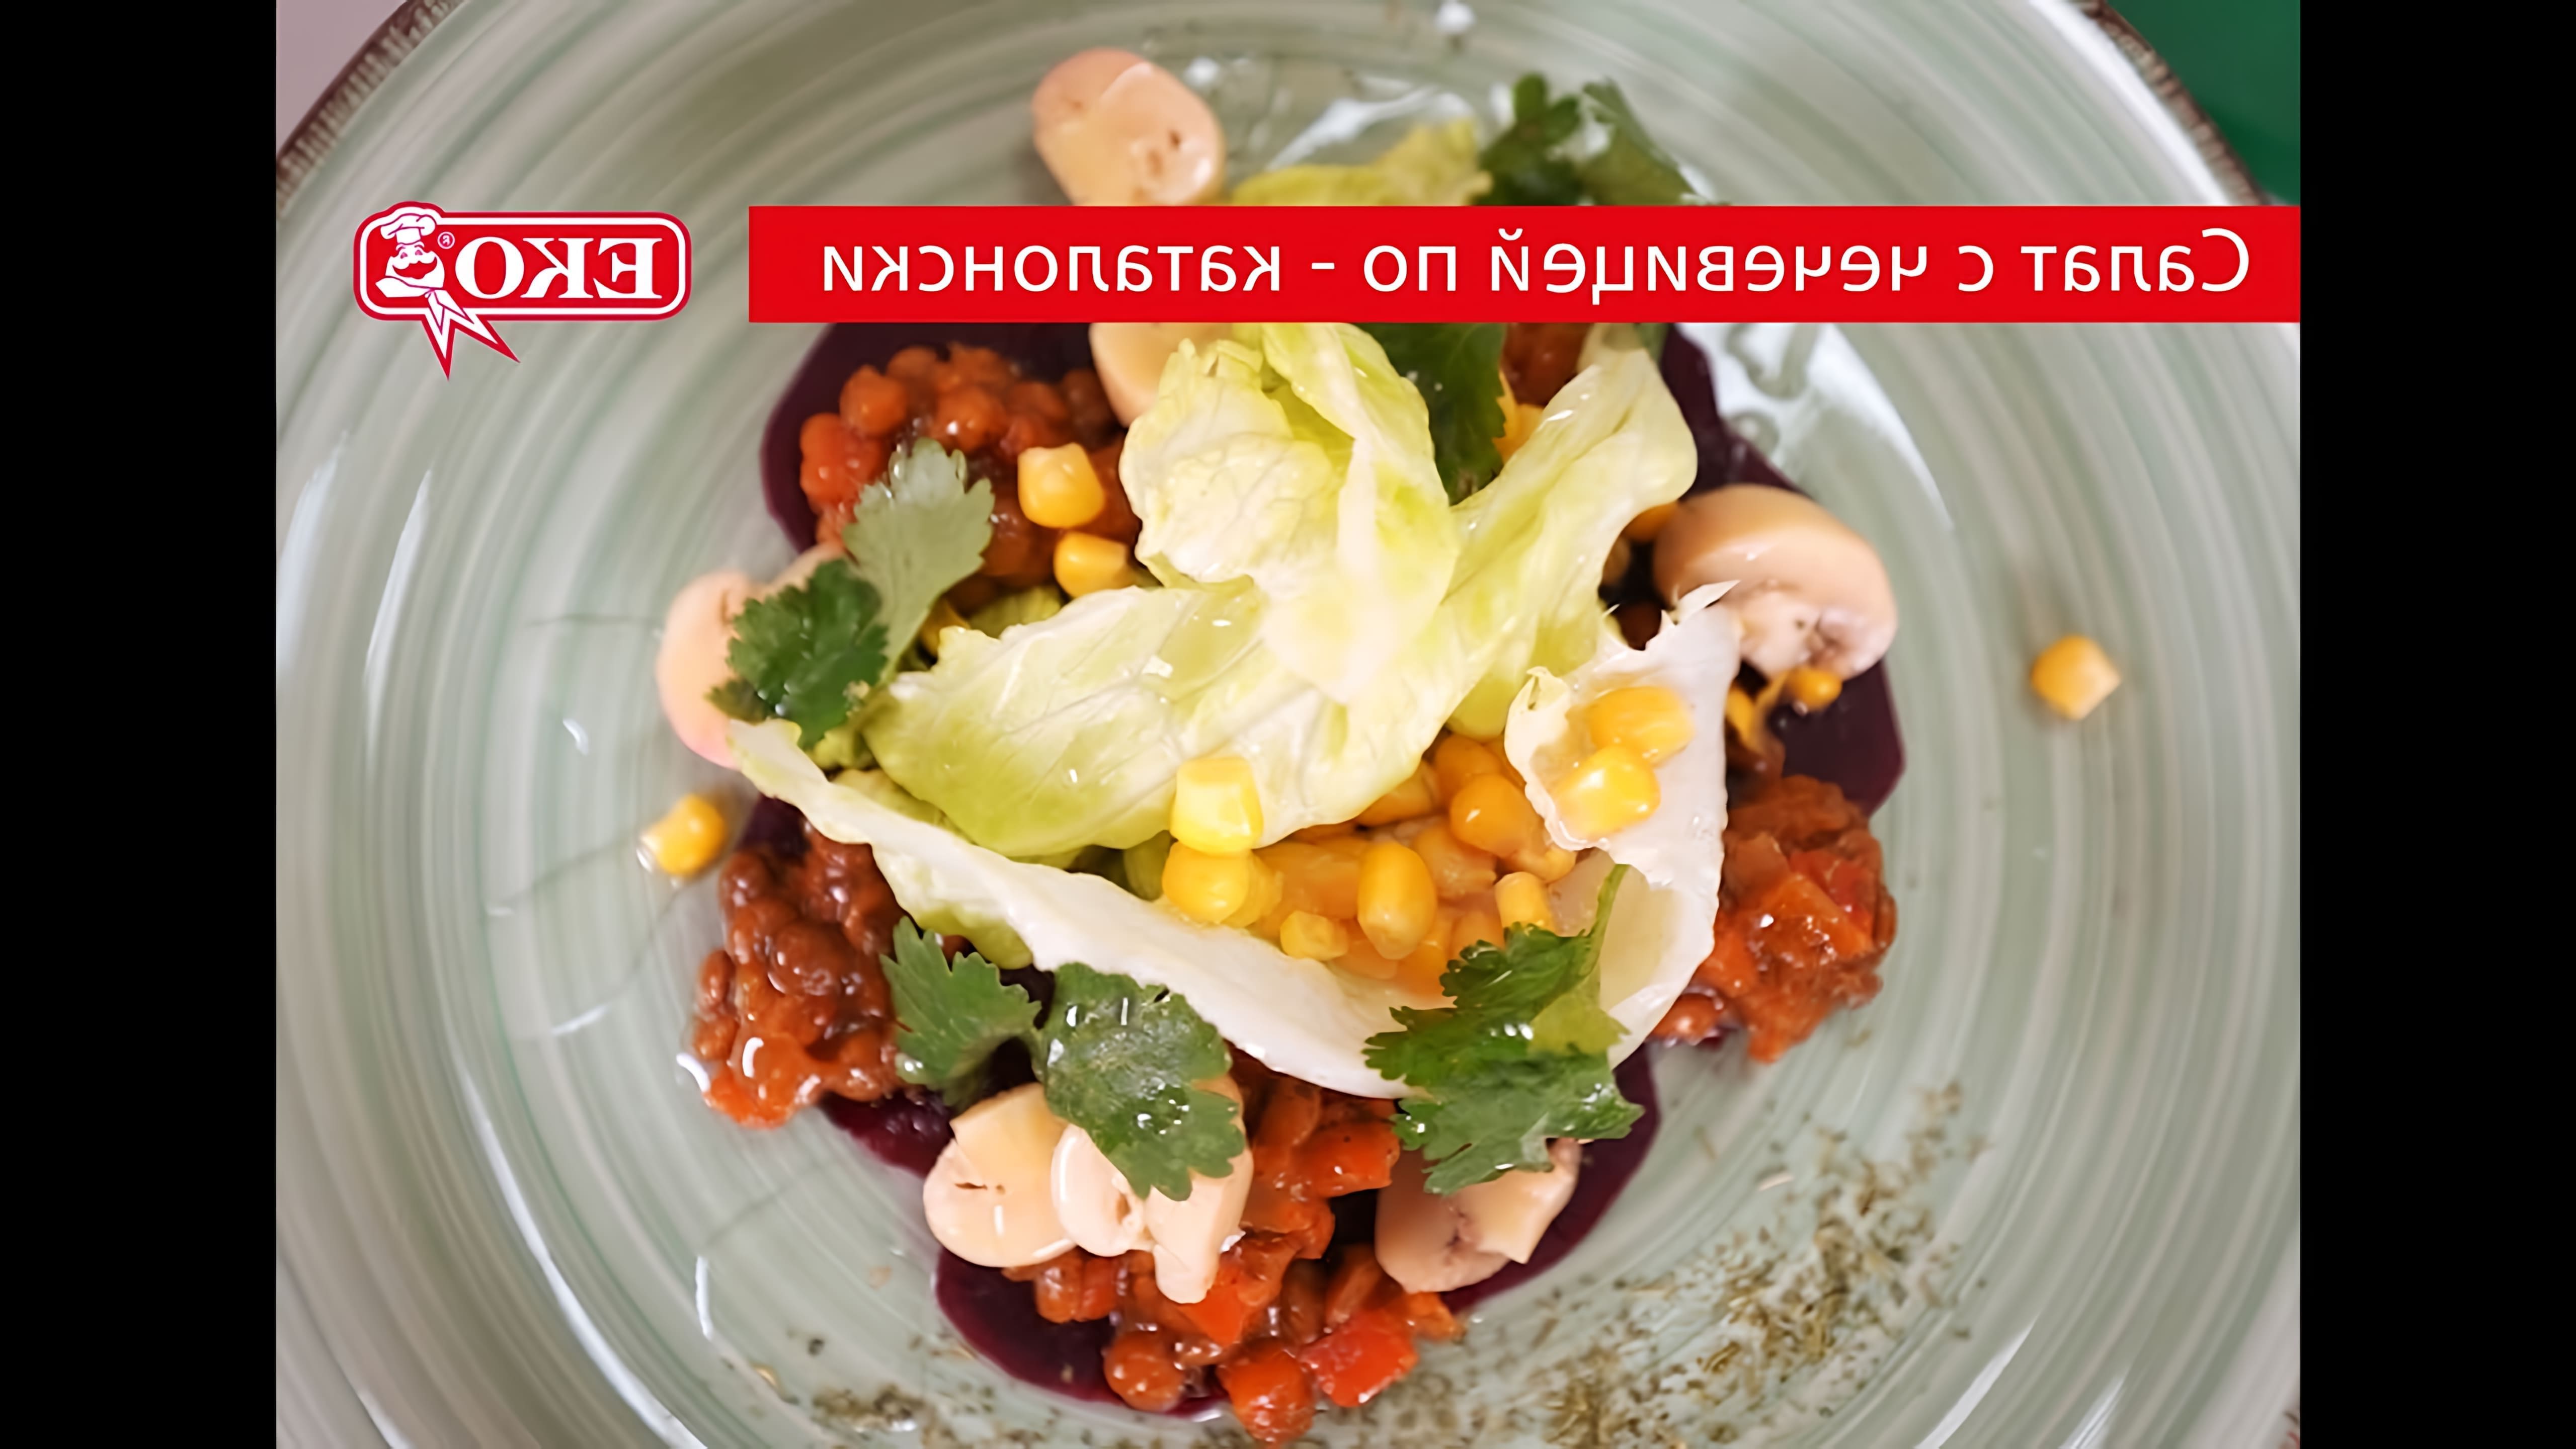 В этом видео демонстрируется рецепт необычного салата, состоящего из свеклы, чечевицы, кукурузы и маринованных шампиньонов